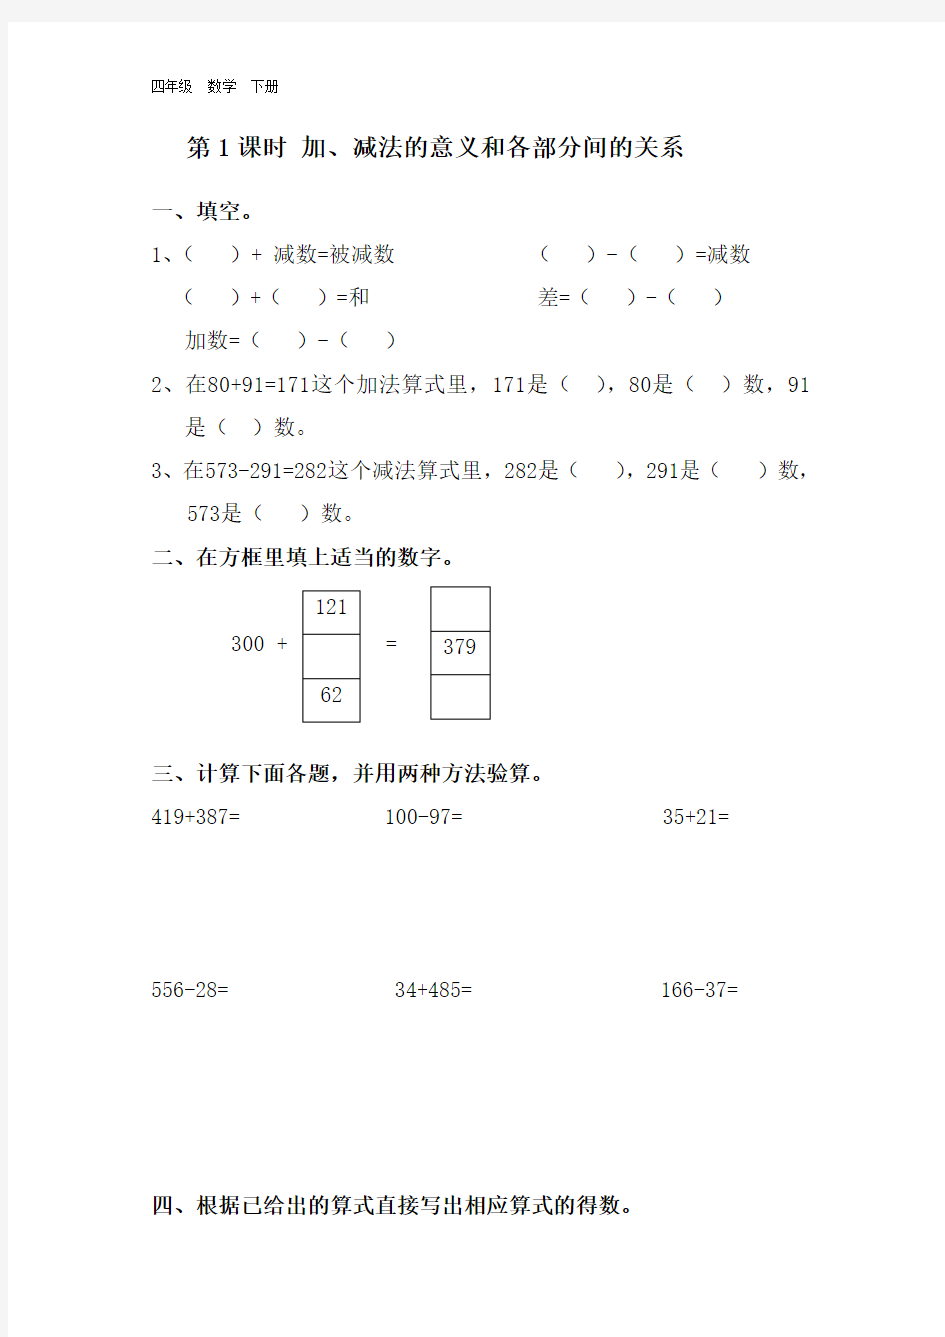 【人教版】2020小学四年级下册数学：全册课堂作业设计-第1单元(001)